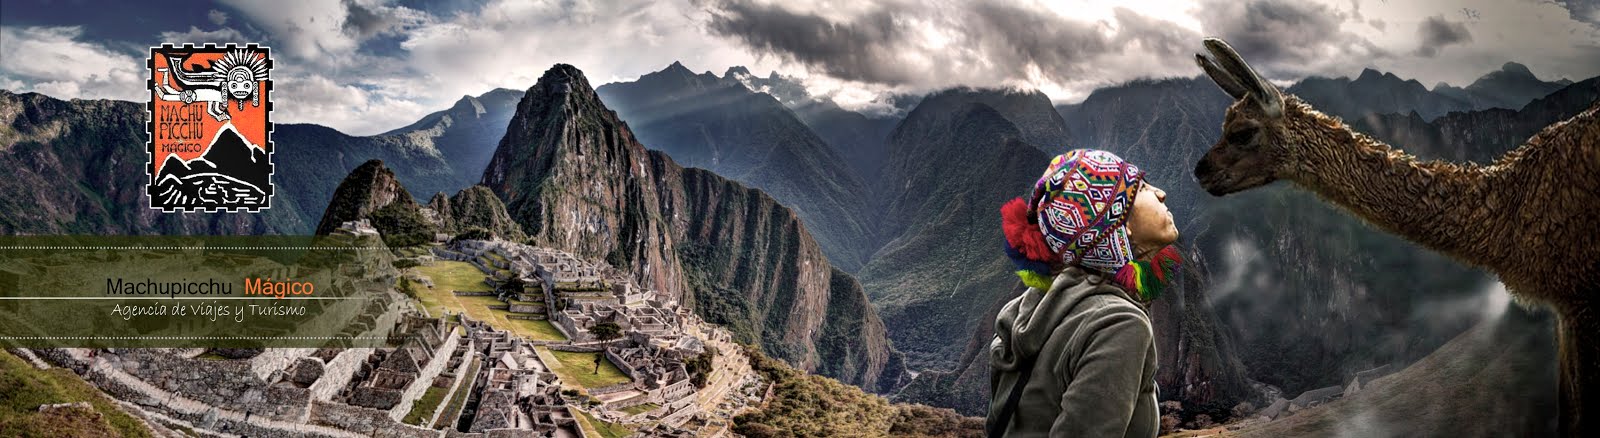 Machupicchu Travel Perú Tourist Package  Inca Trail to Machupichu